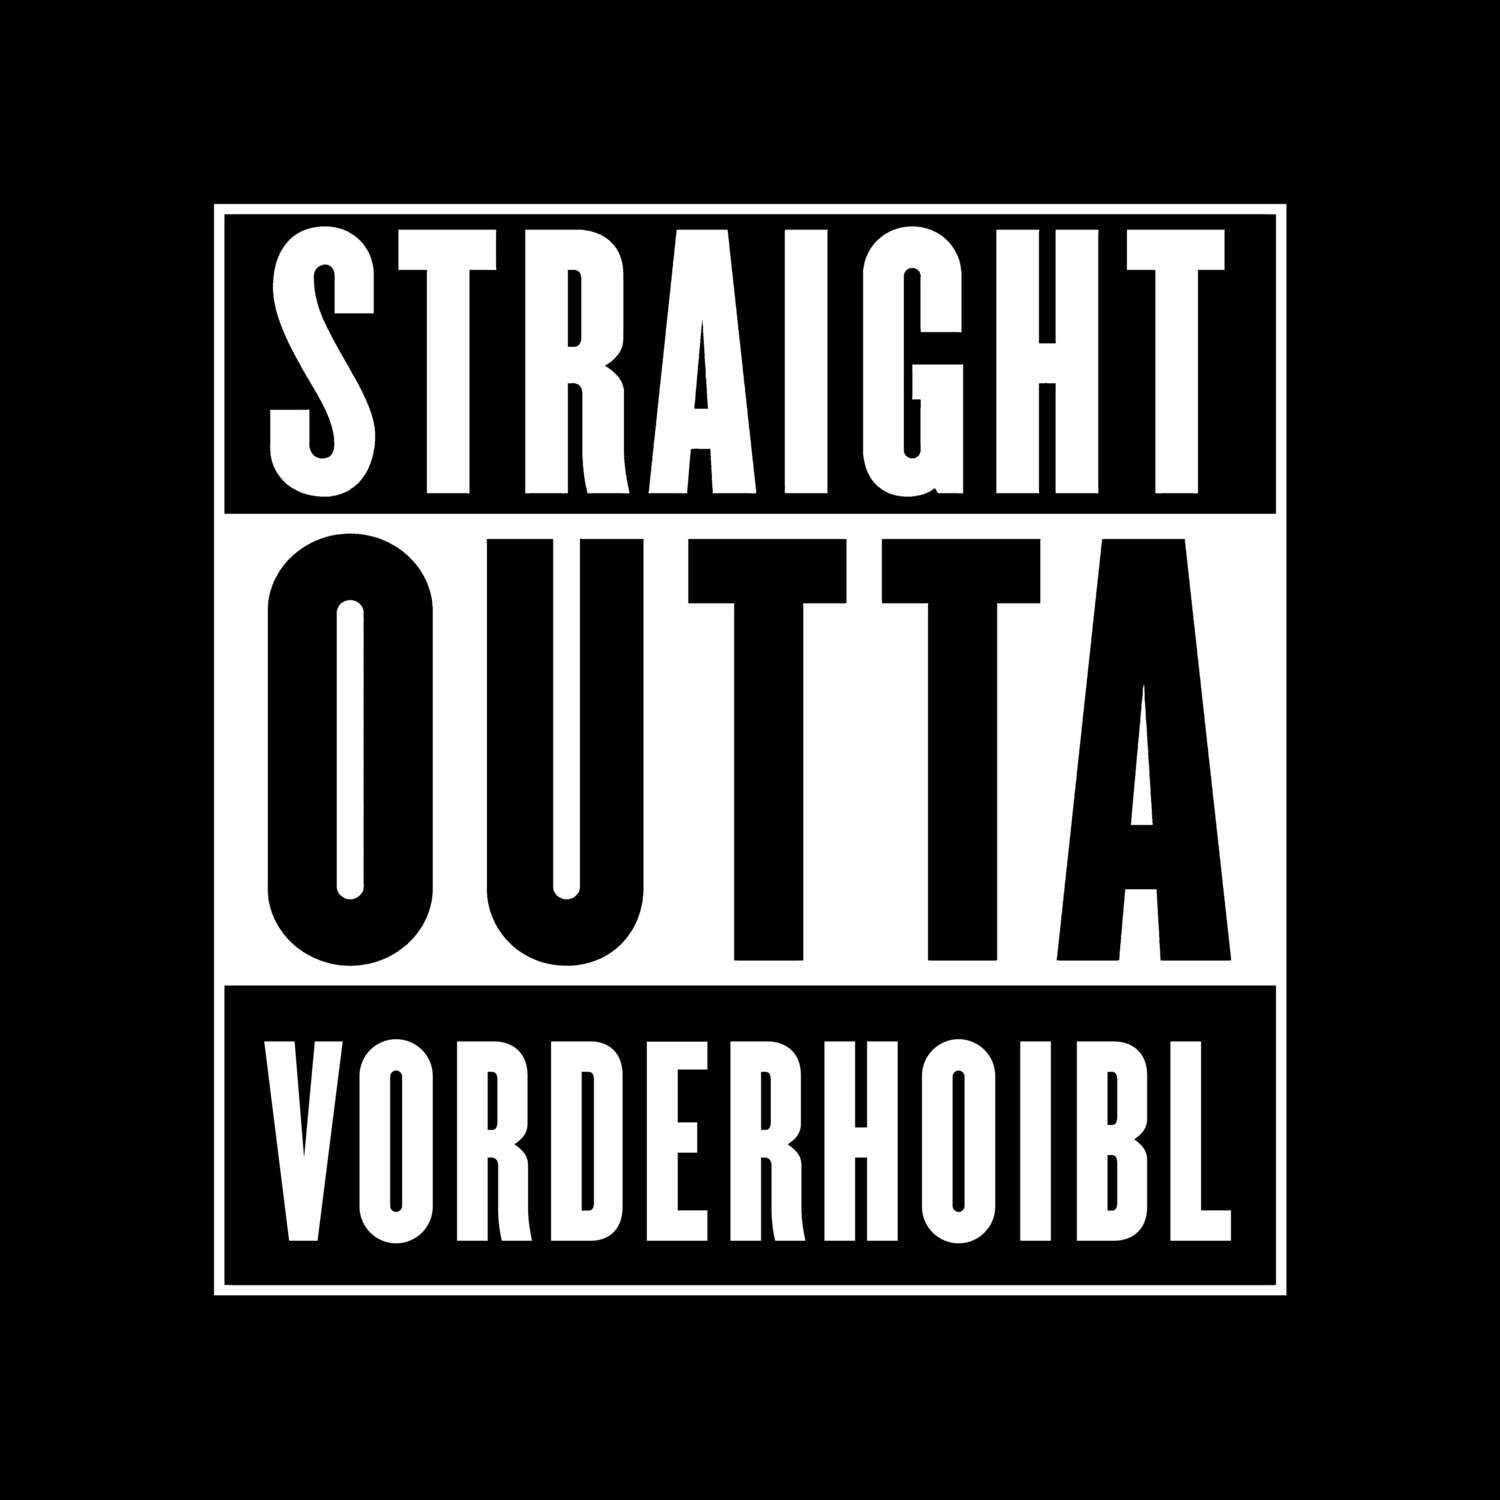 Vorderhoibl T-Shirt »Straight Outta«